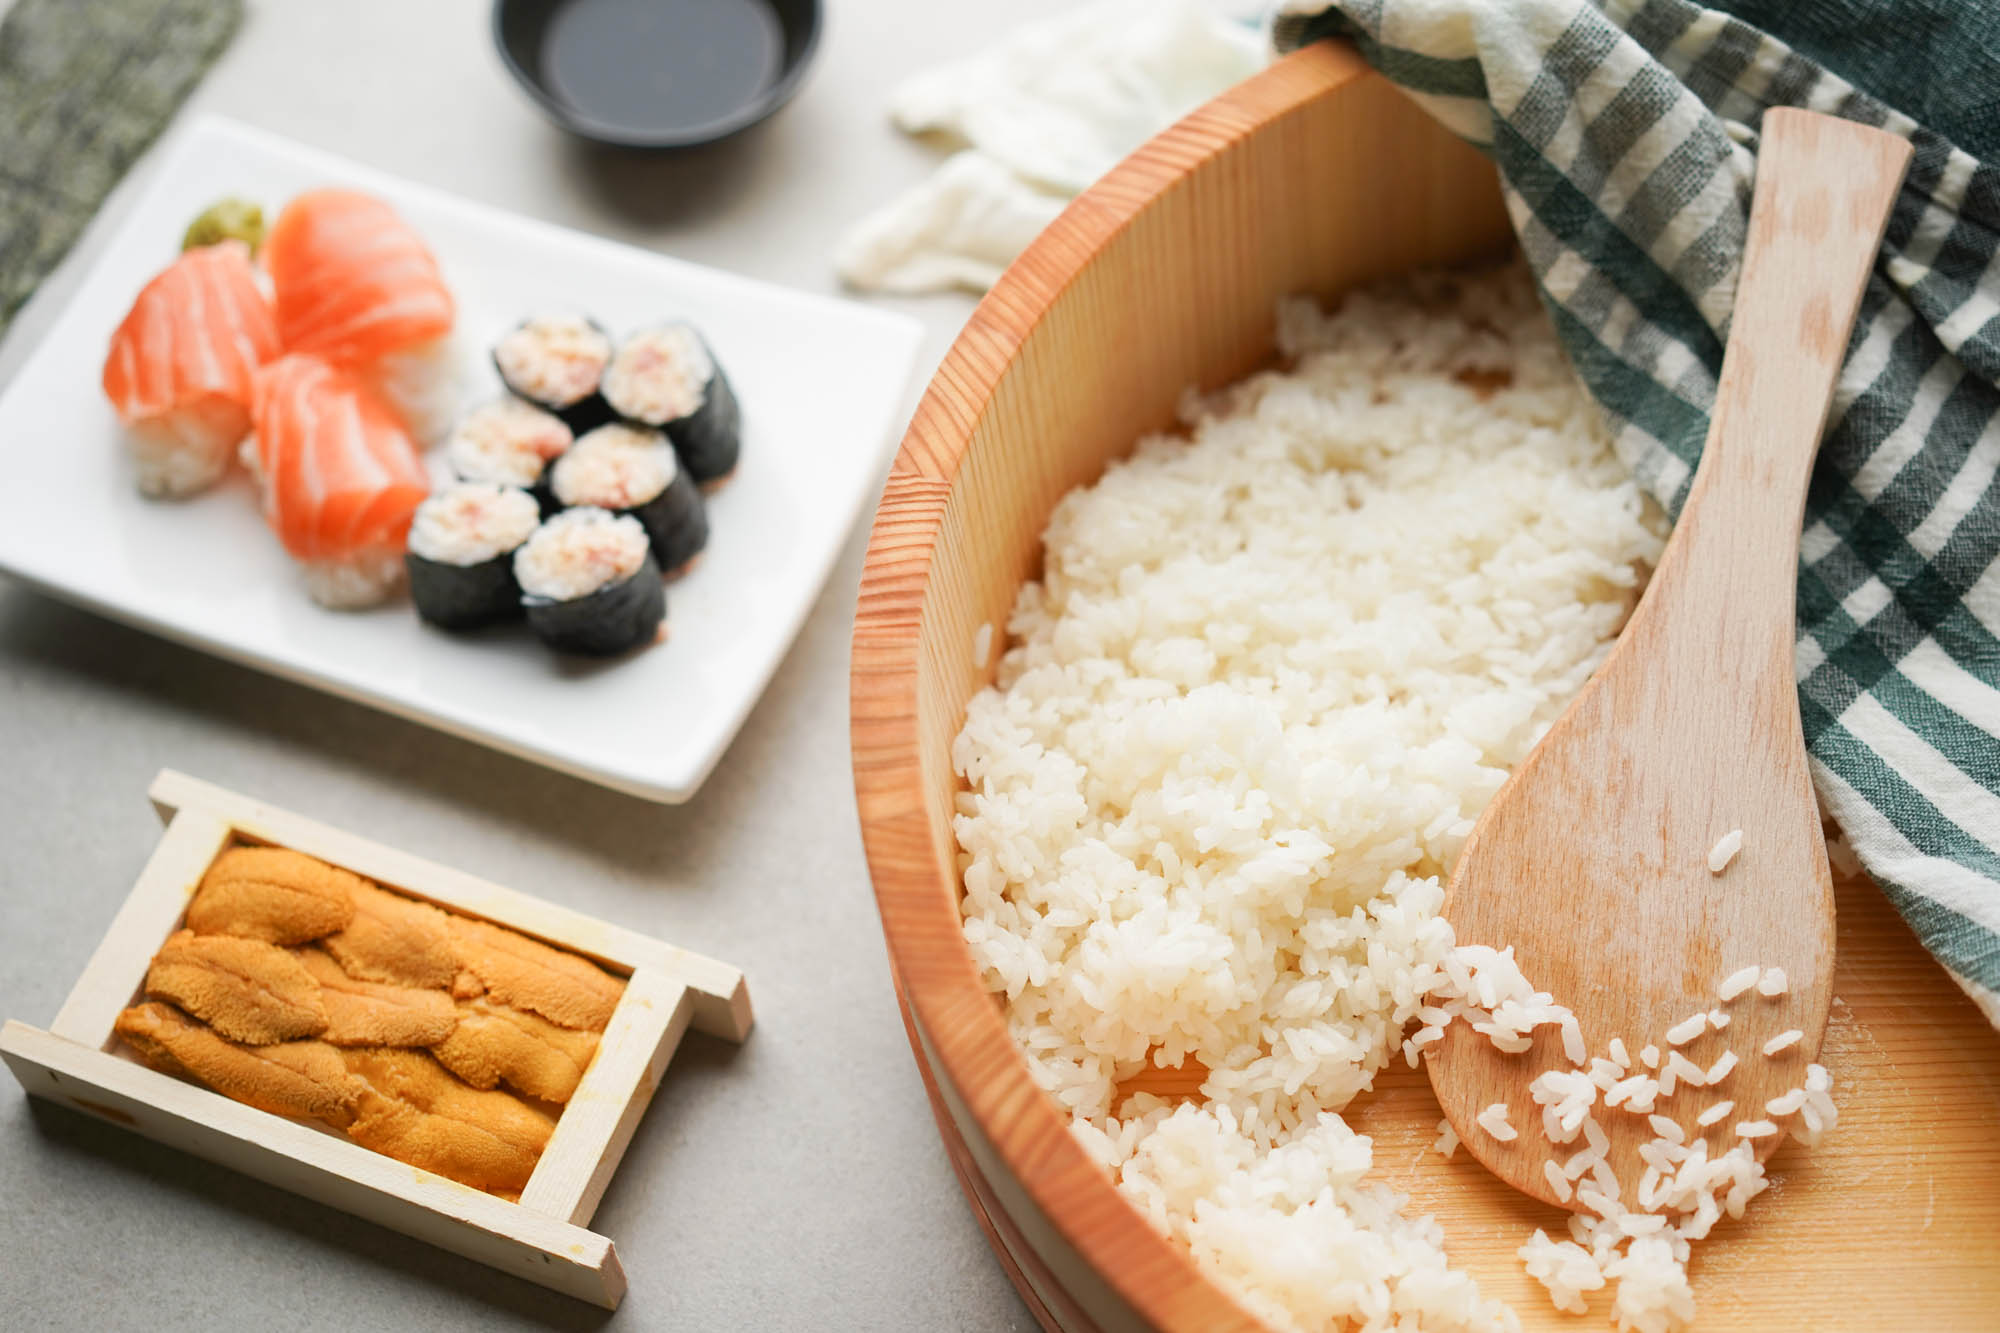 https://www.hungryhuy.com/wp-content/uploads/sushi-rice-in-hangiri.jpg